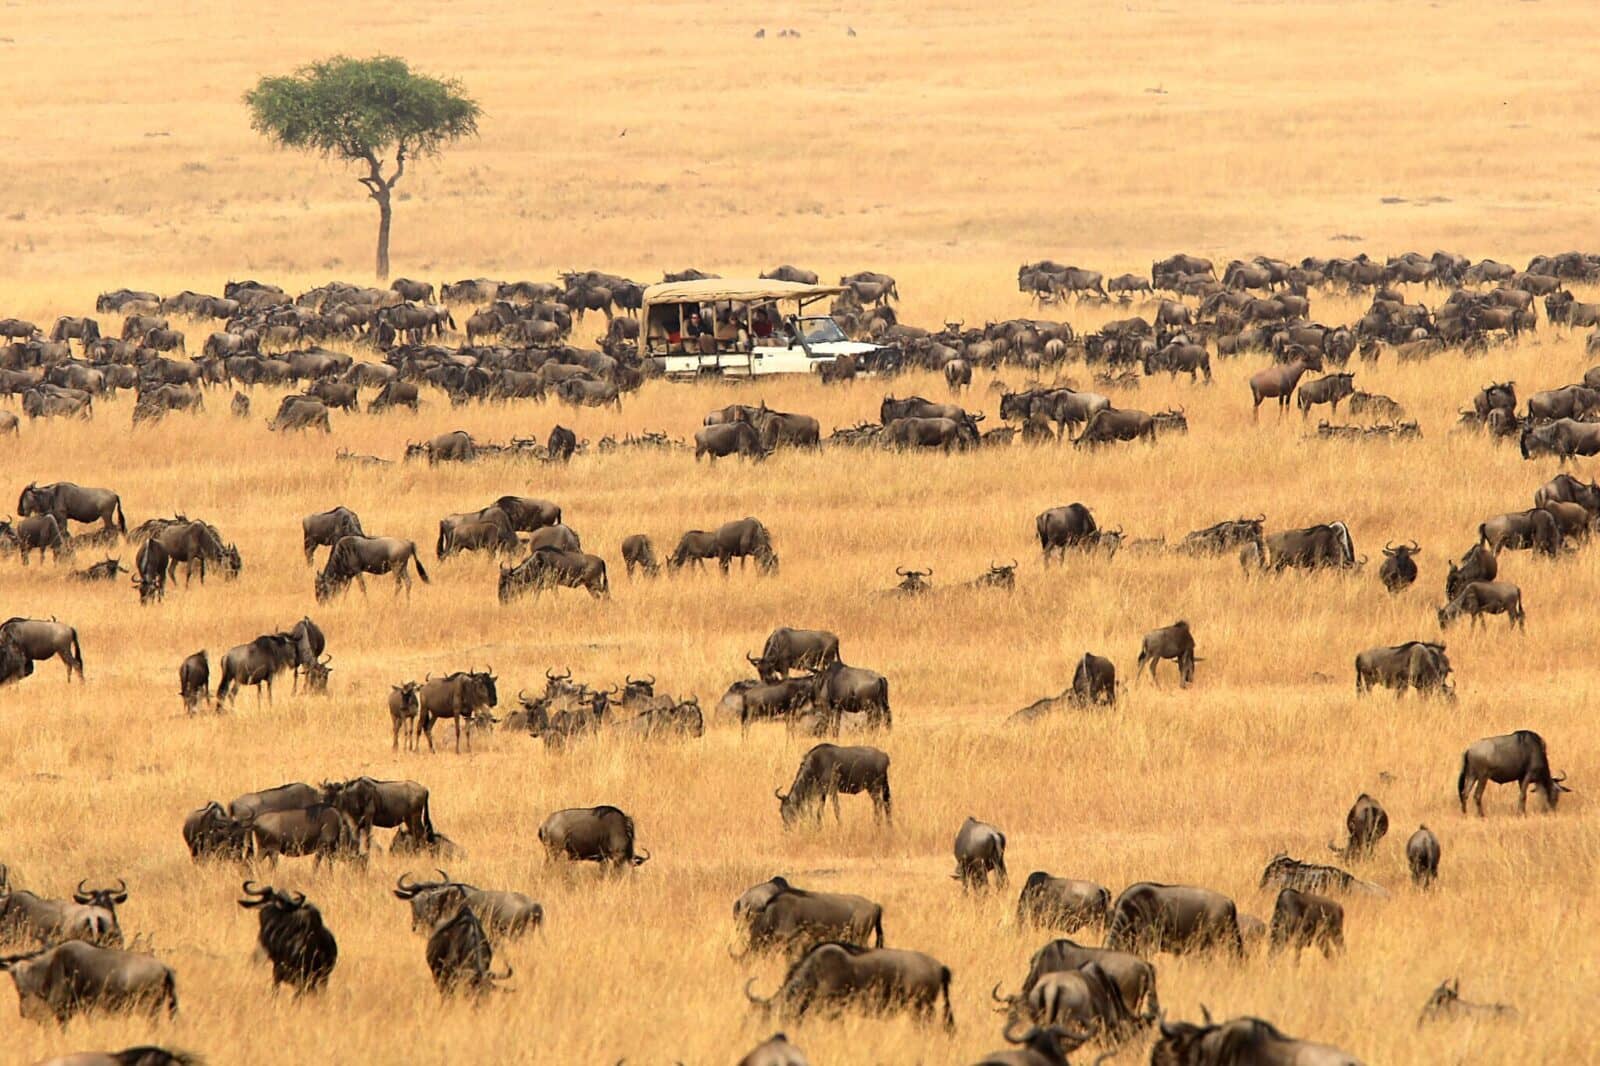 Safari game drives in Masai Mara